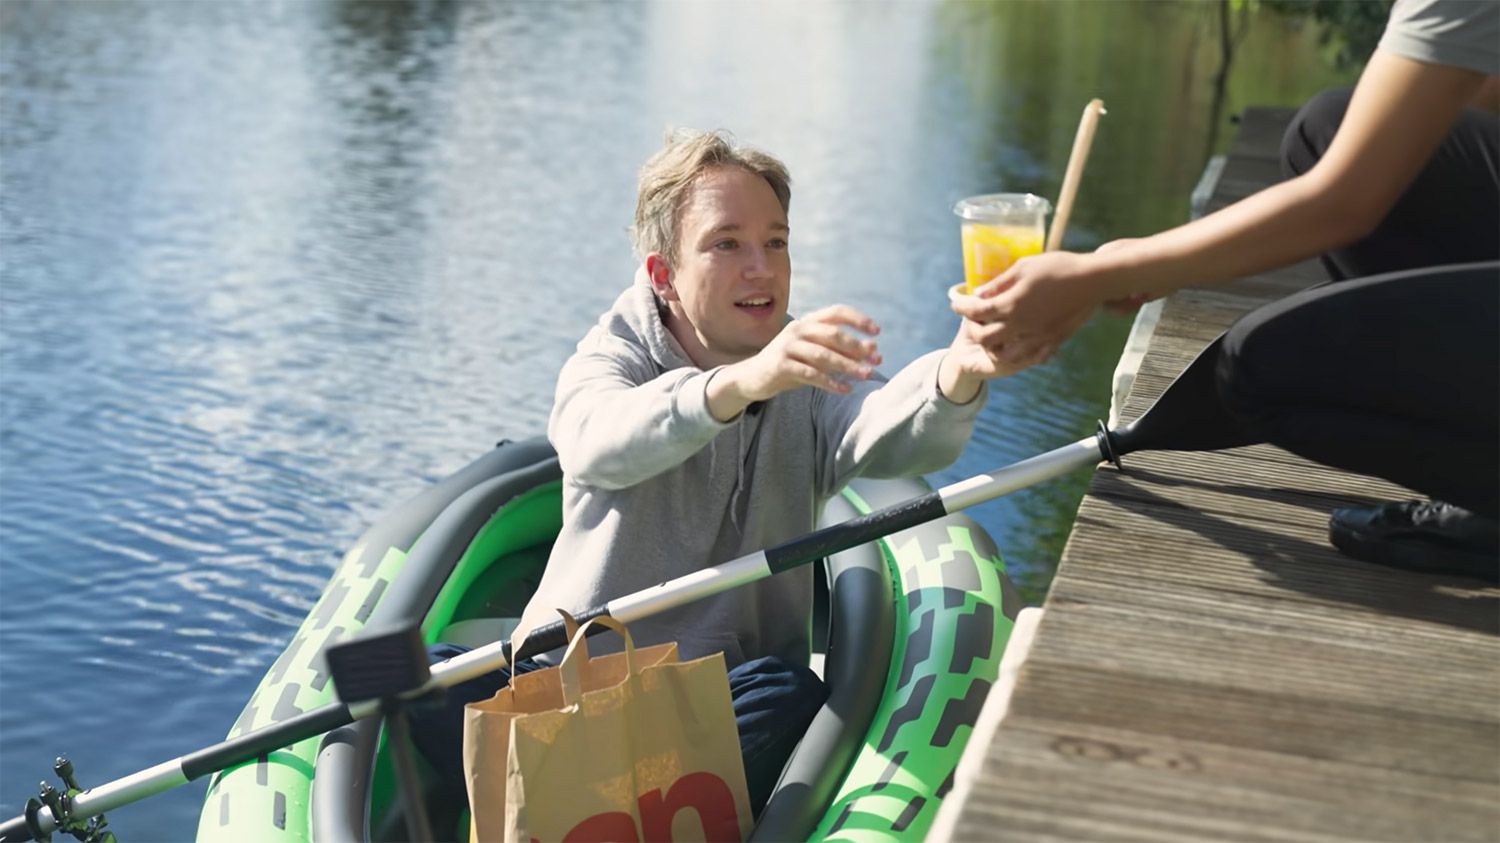 McDonald's Có Nhà hàng Ven sông với Cửa sổ Float-Thru